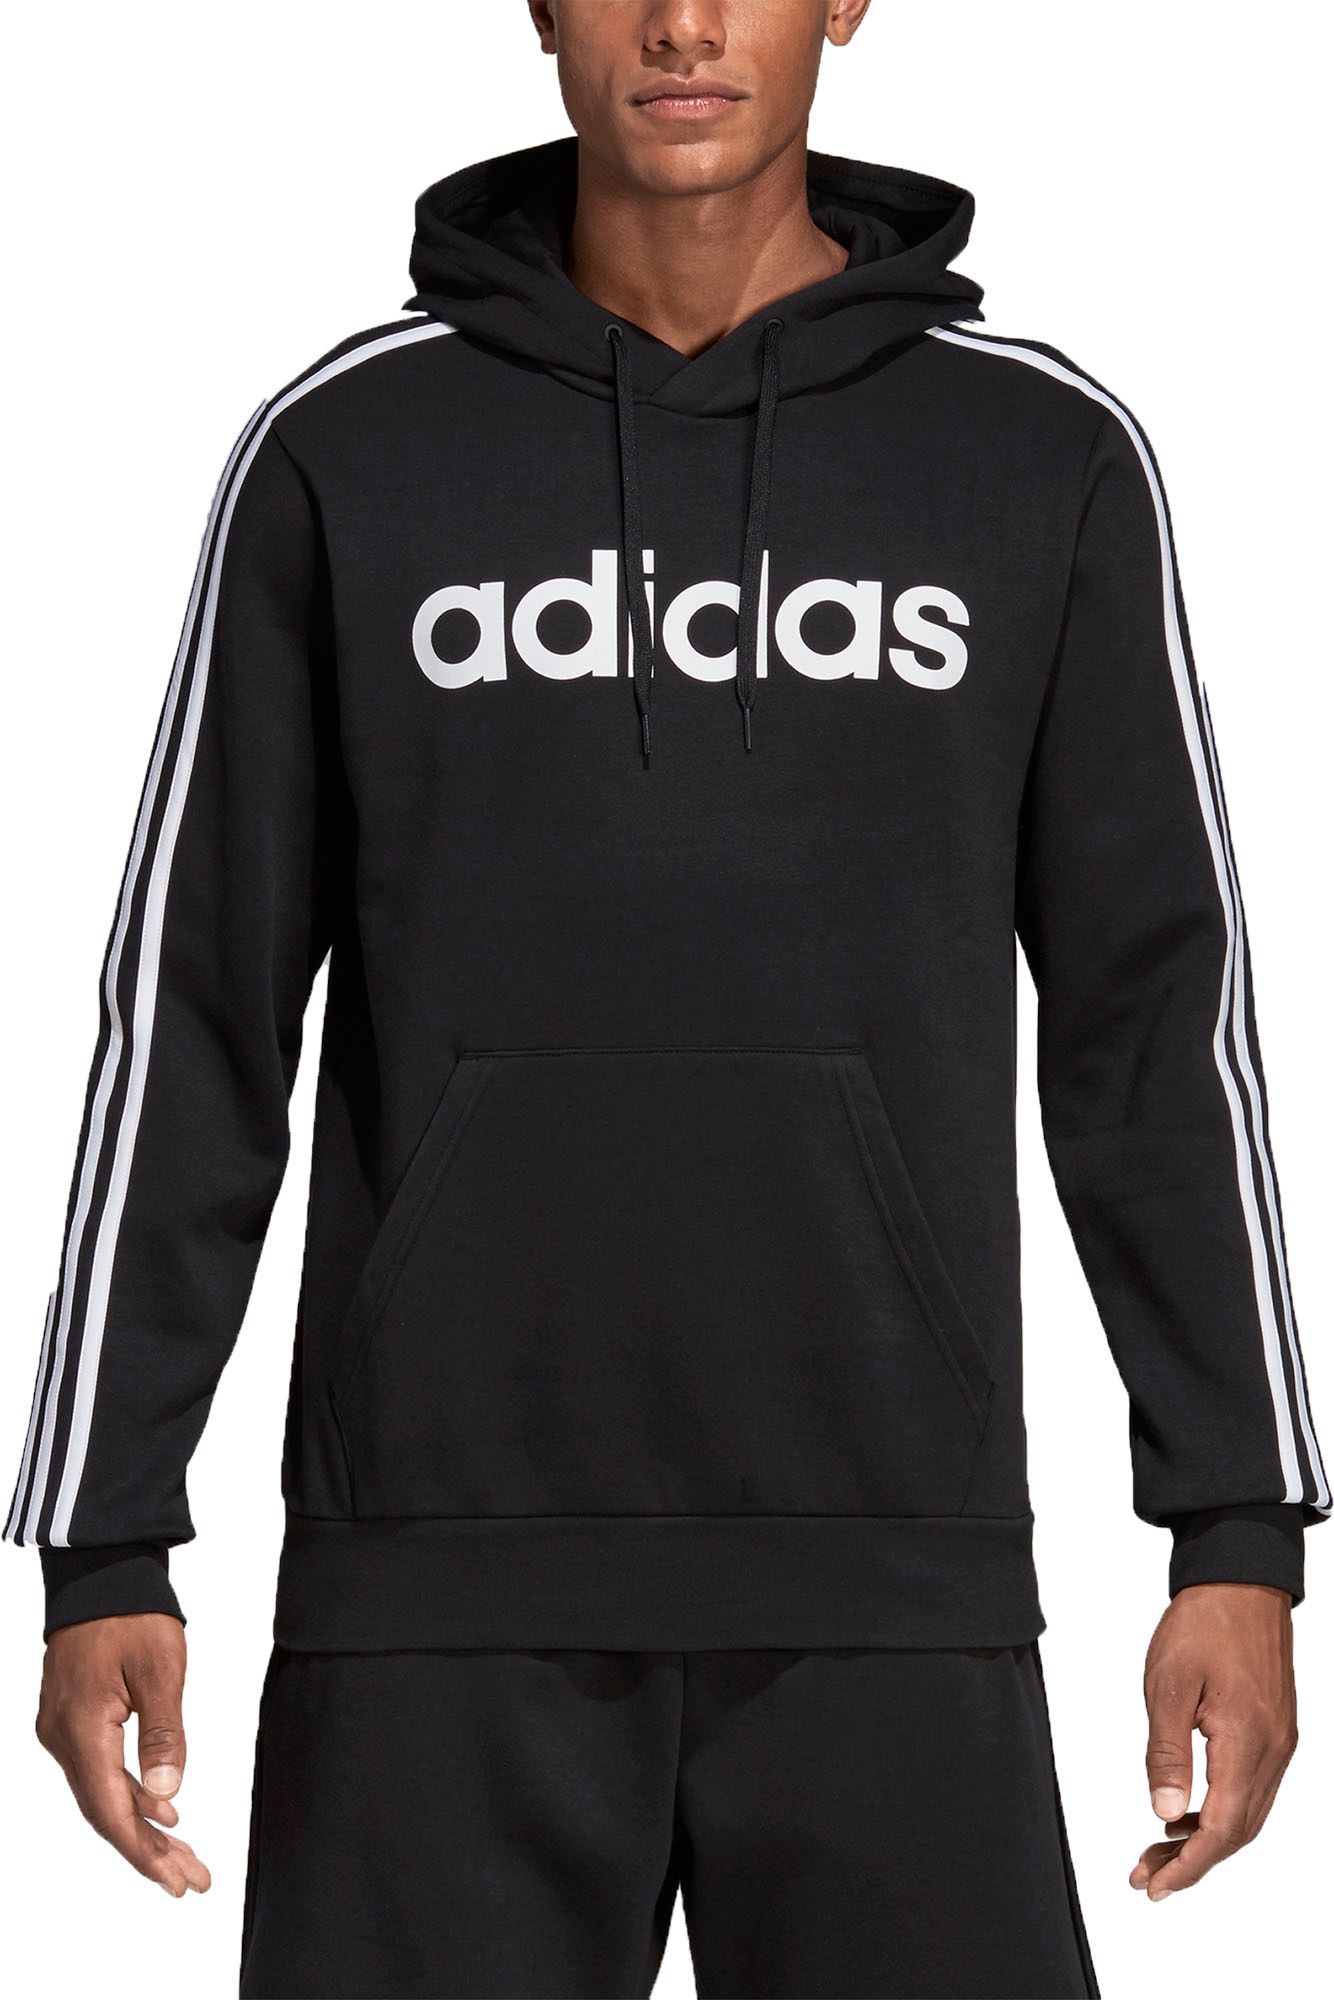 adidas pullover hoodie black